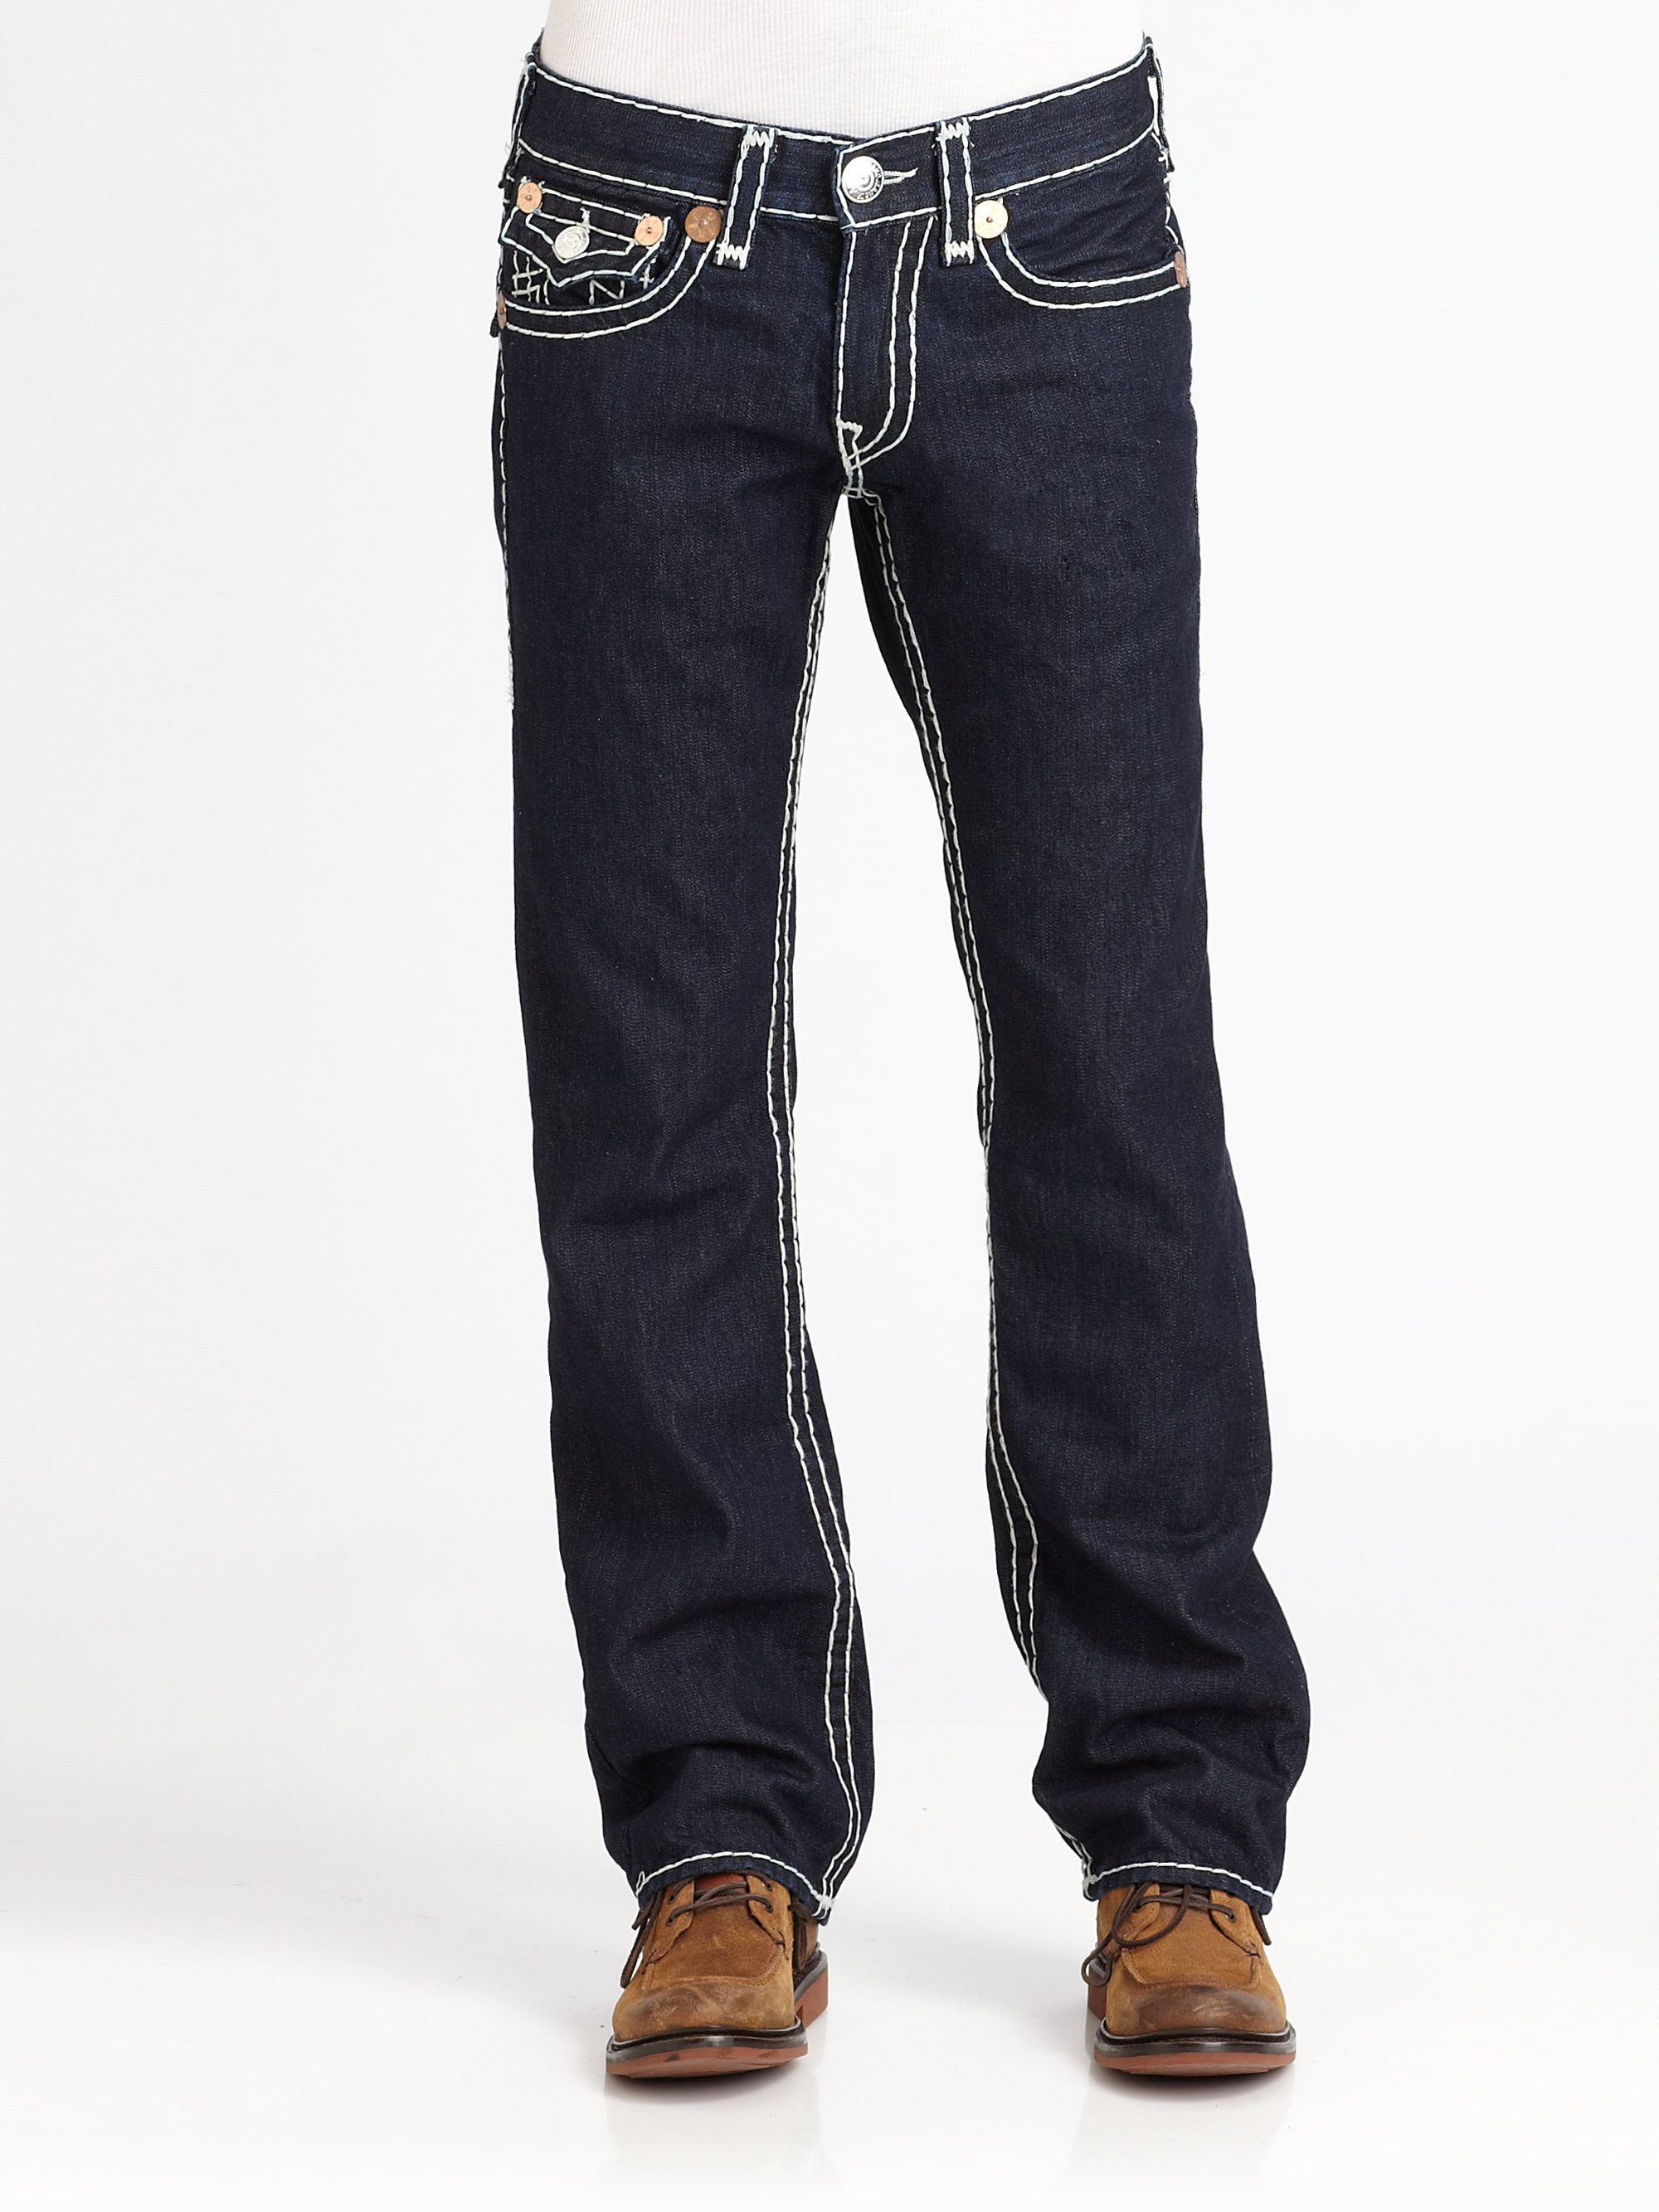 Lyst - True religion Ricky Supert Jeans in Black for Men